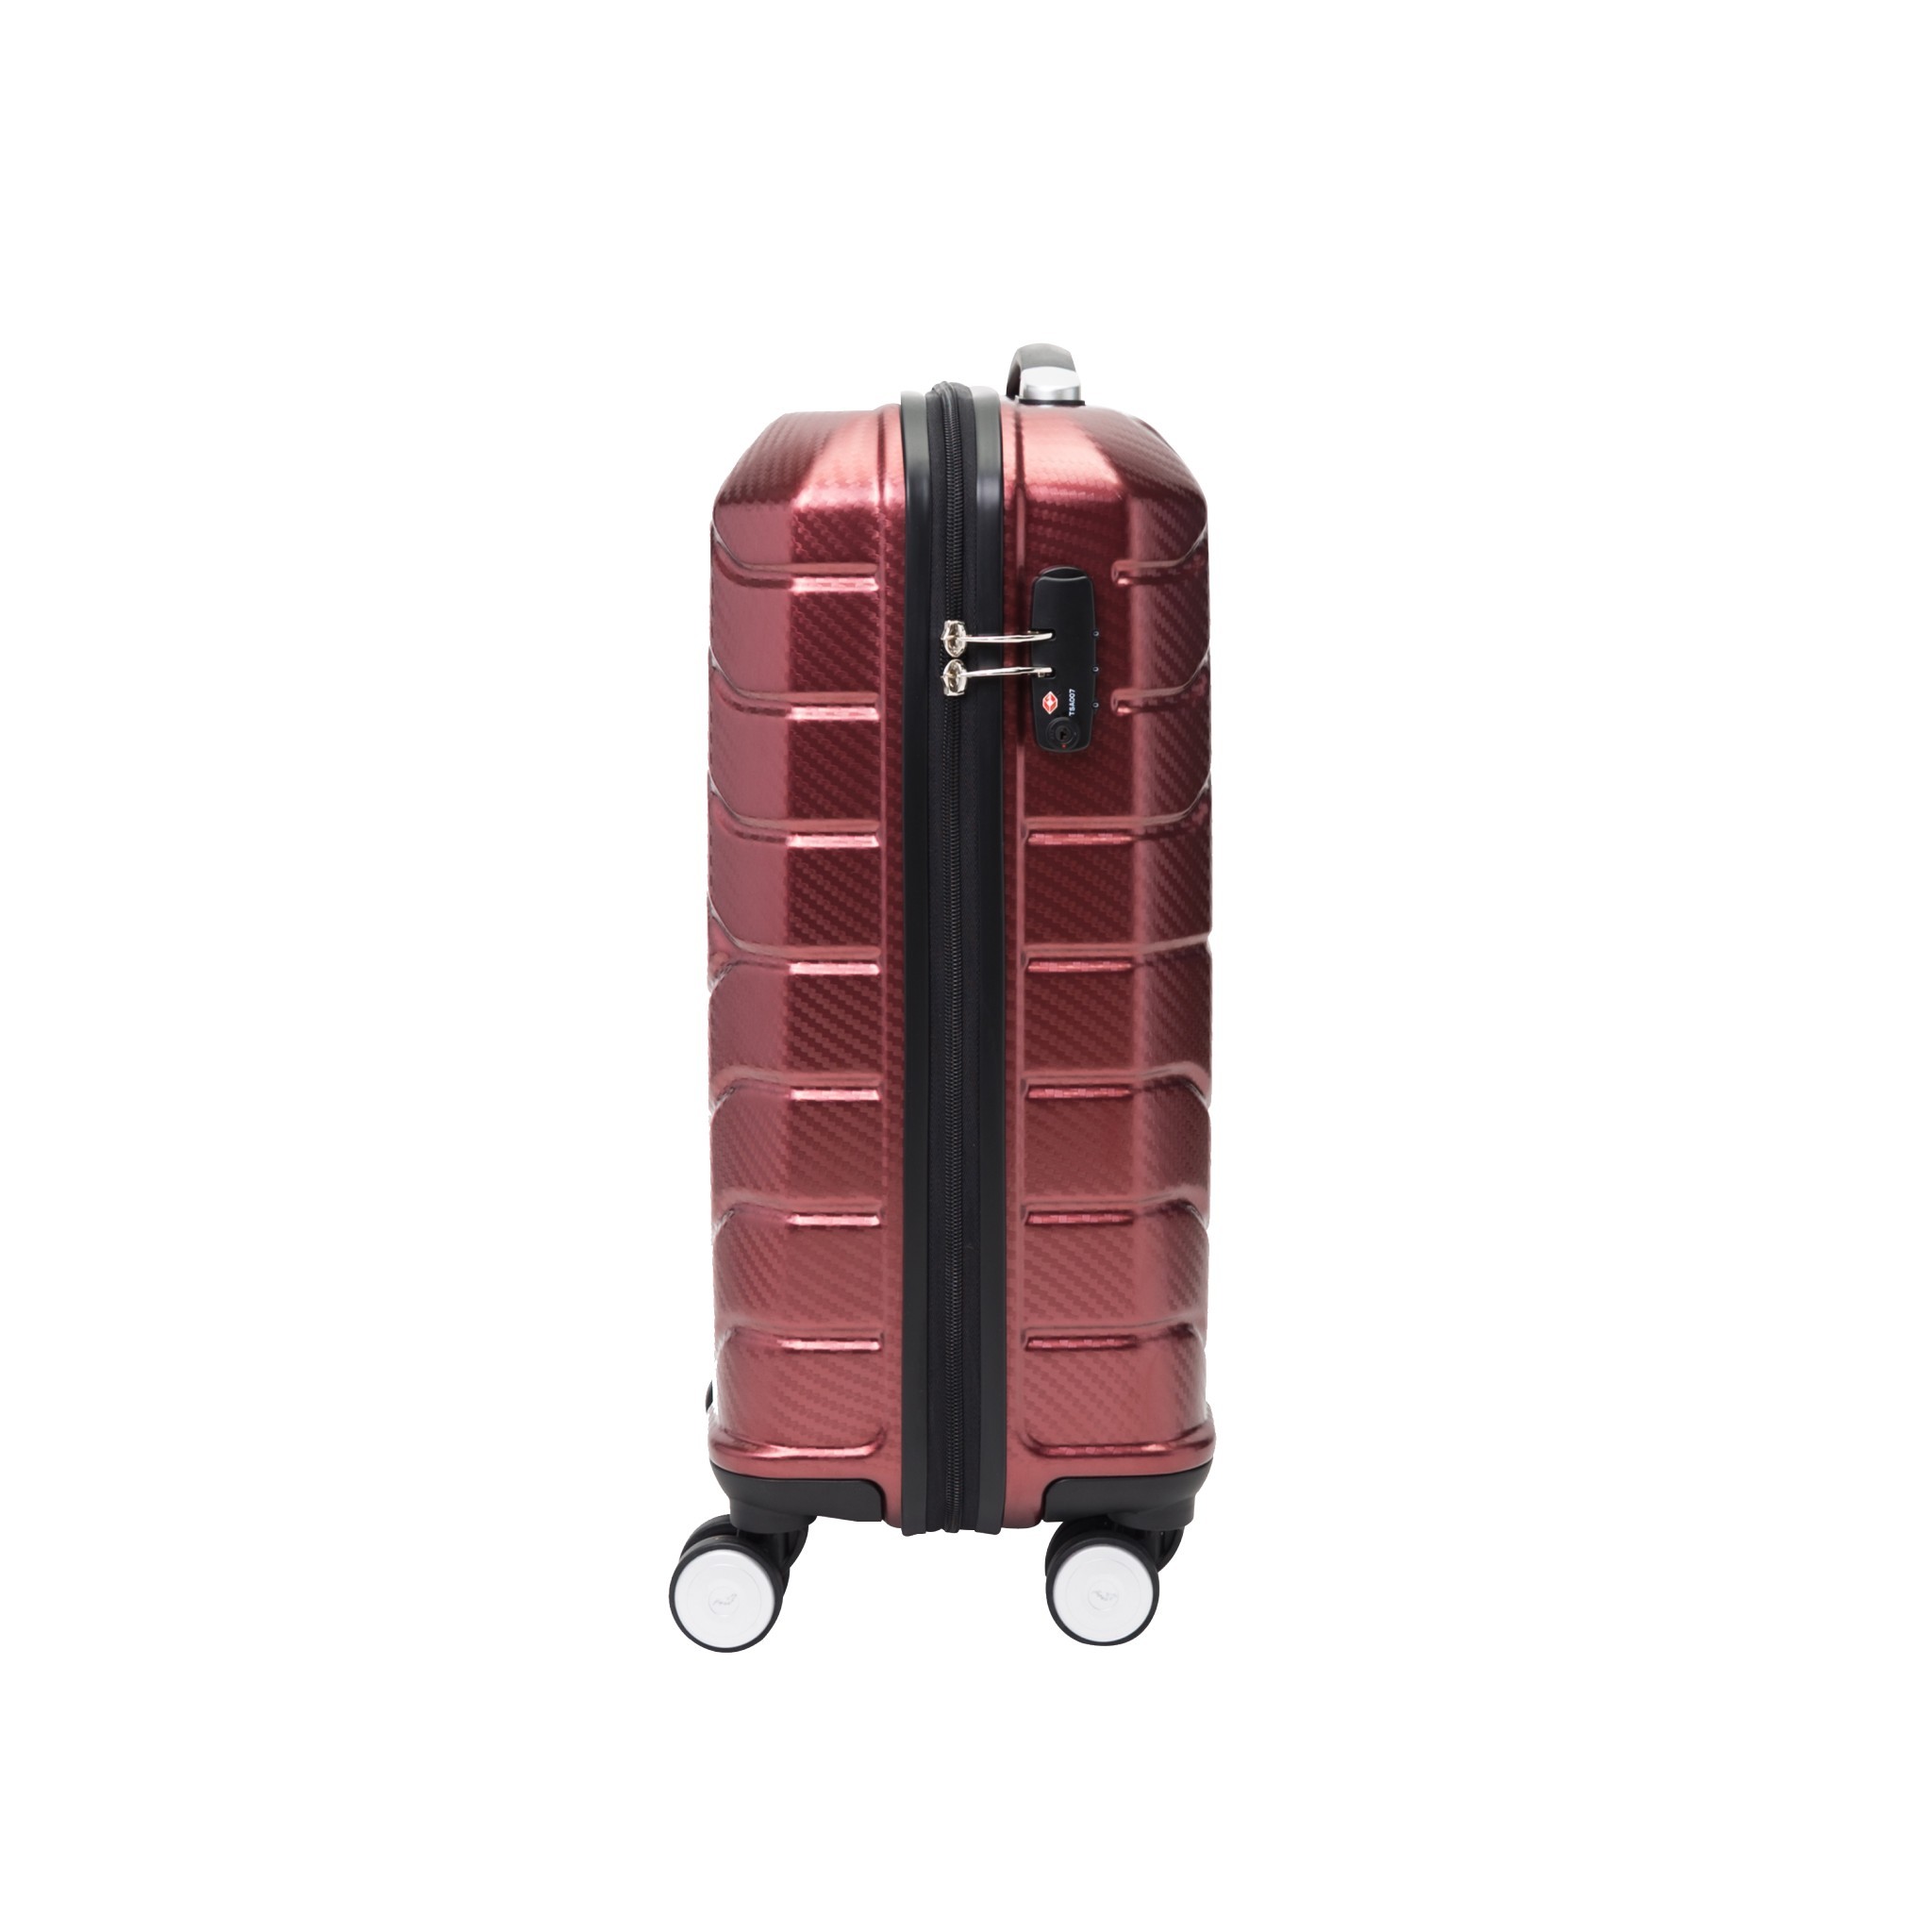 กระเป๋าเดินทางล้อลาก รุ่น ESPERIA ขนาด 20 นิ้ว สีแดง